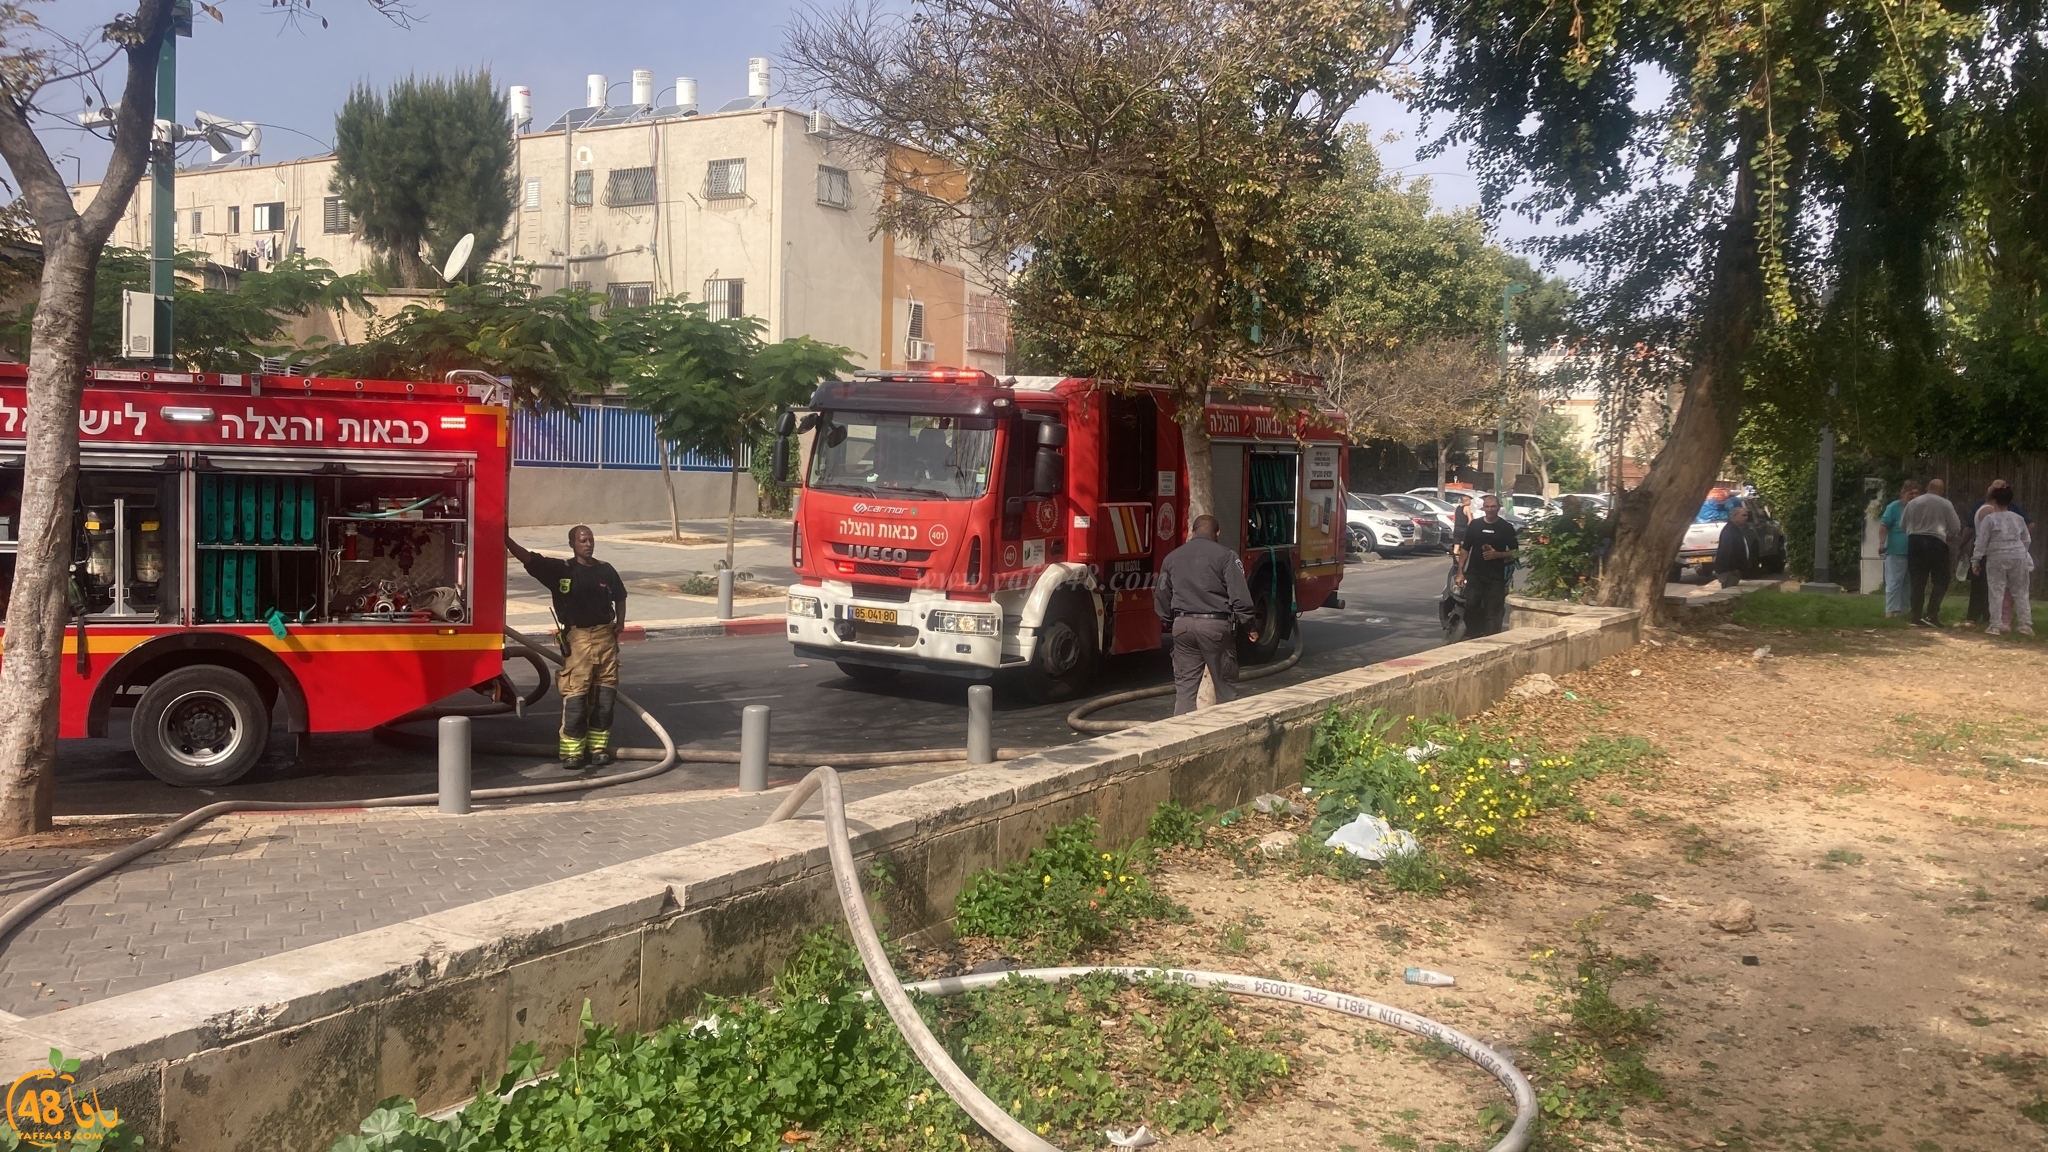  يافا: 4 اصابات طفيفة بحريق داخل شقة سكنية